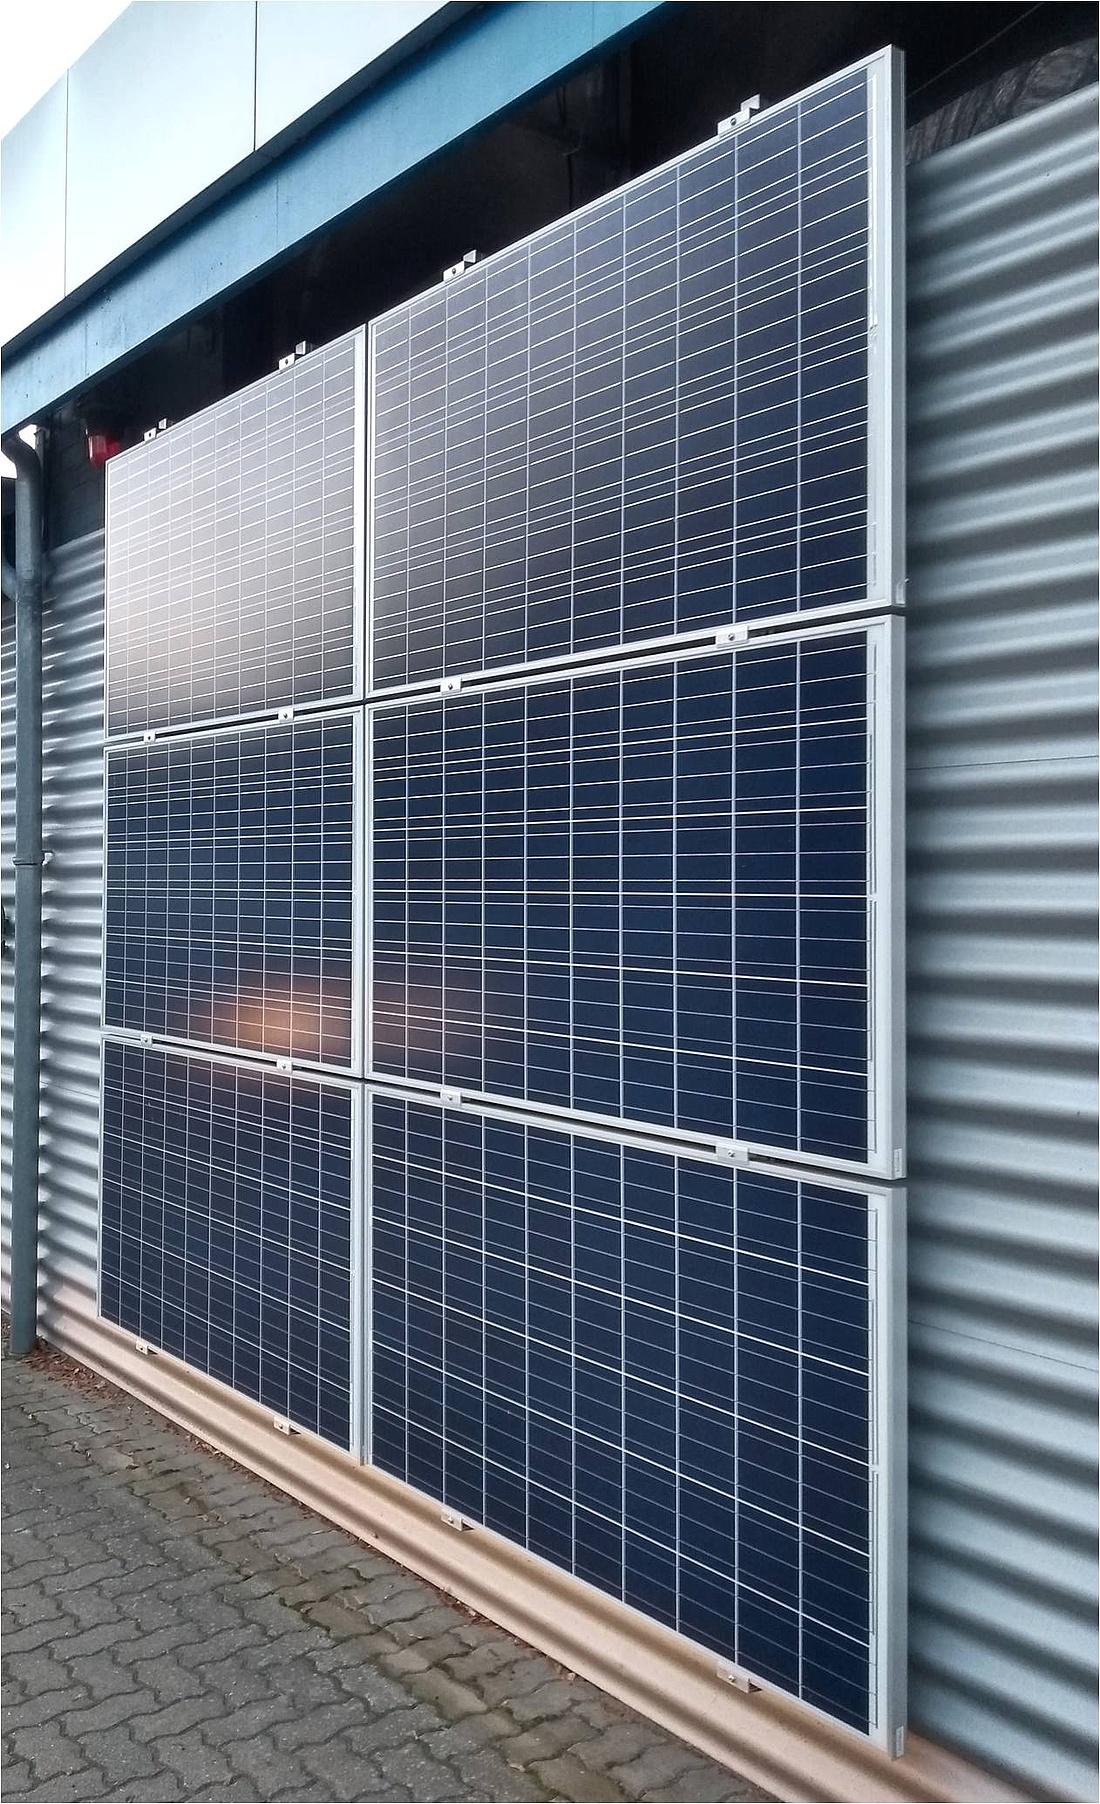 Solarmodule an einer Wellblech-Fassade (Foto: energie-experten.org)